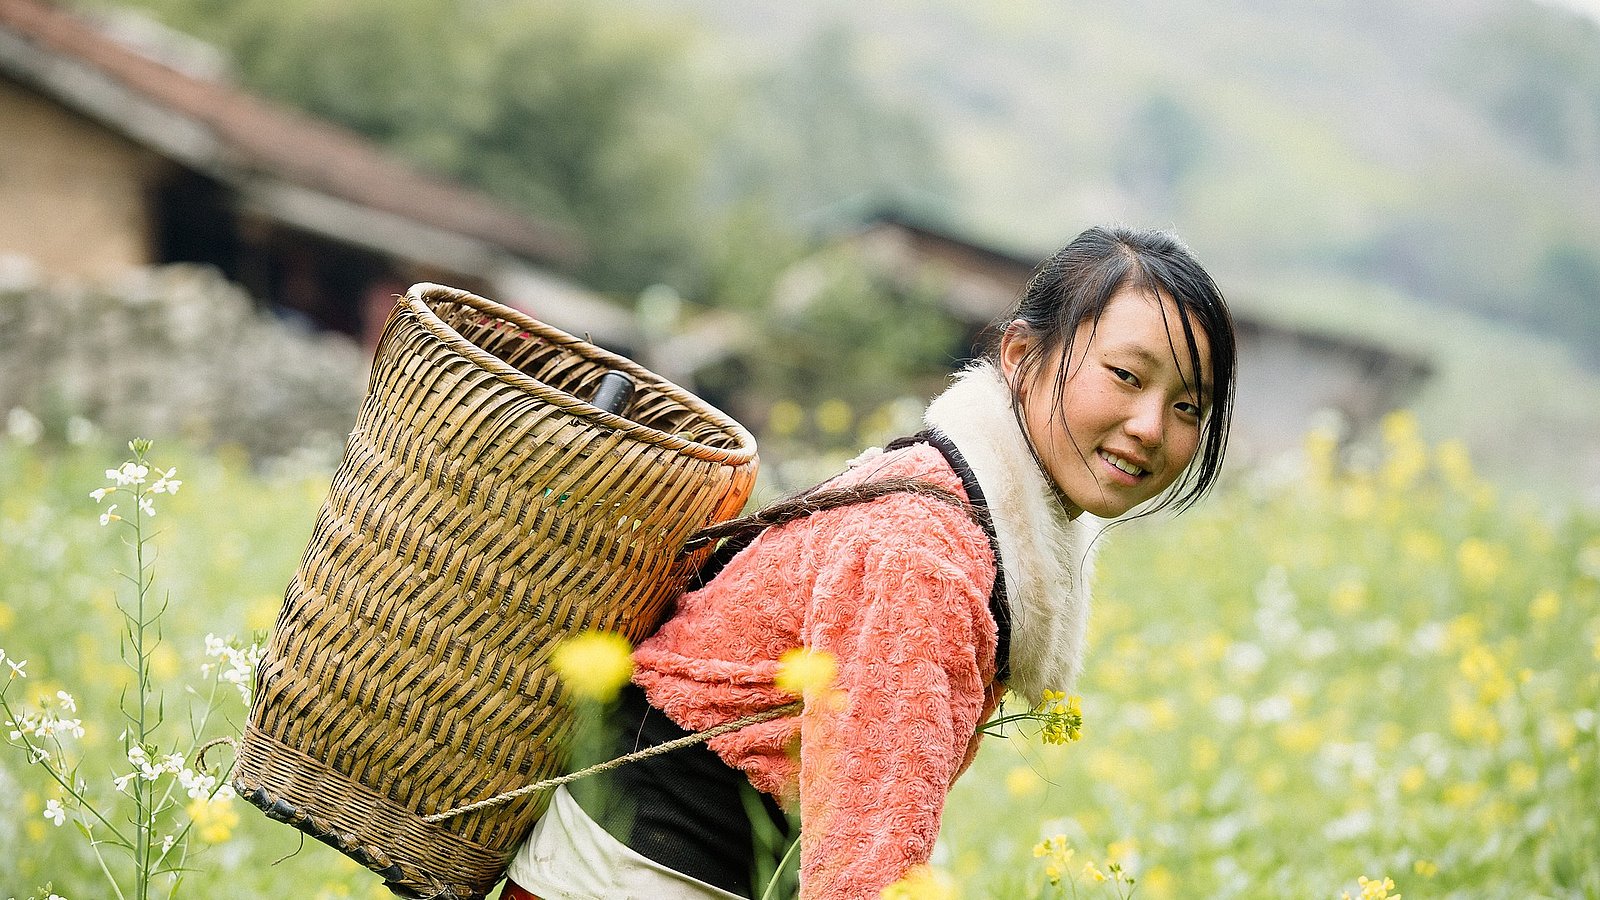 Ein junges Mädchen hält einen Erntekorb auf ihrem Rücken und steht gebeugt in einem Feld. Sie lächelt in die Kamera.